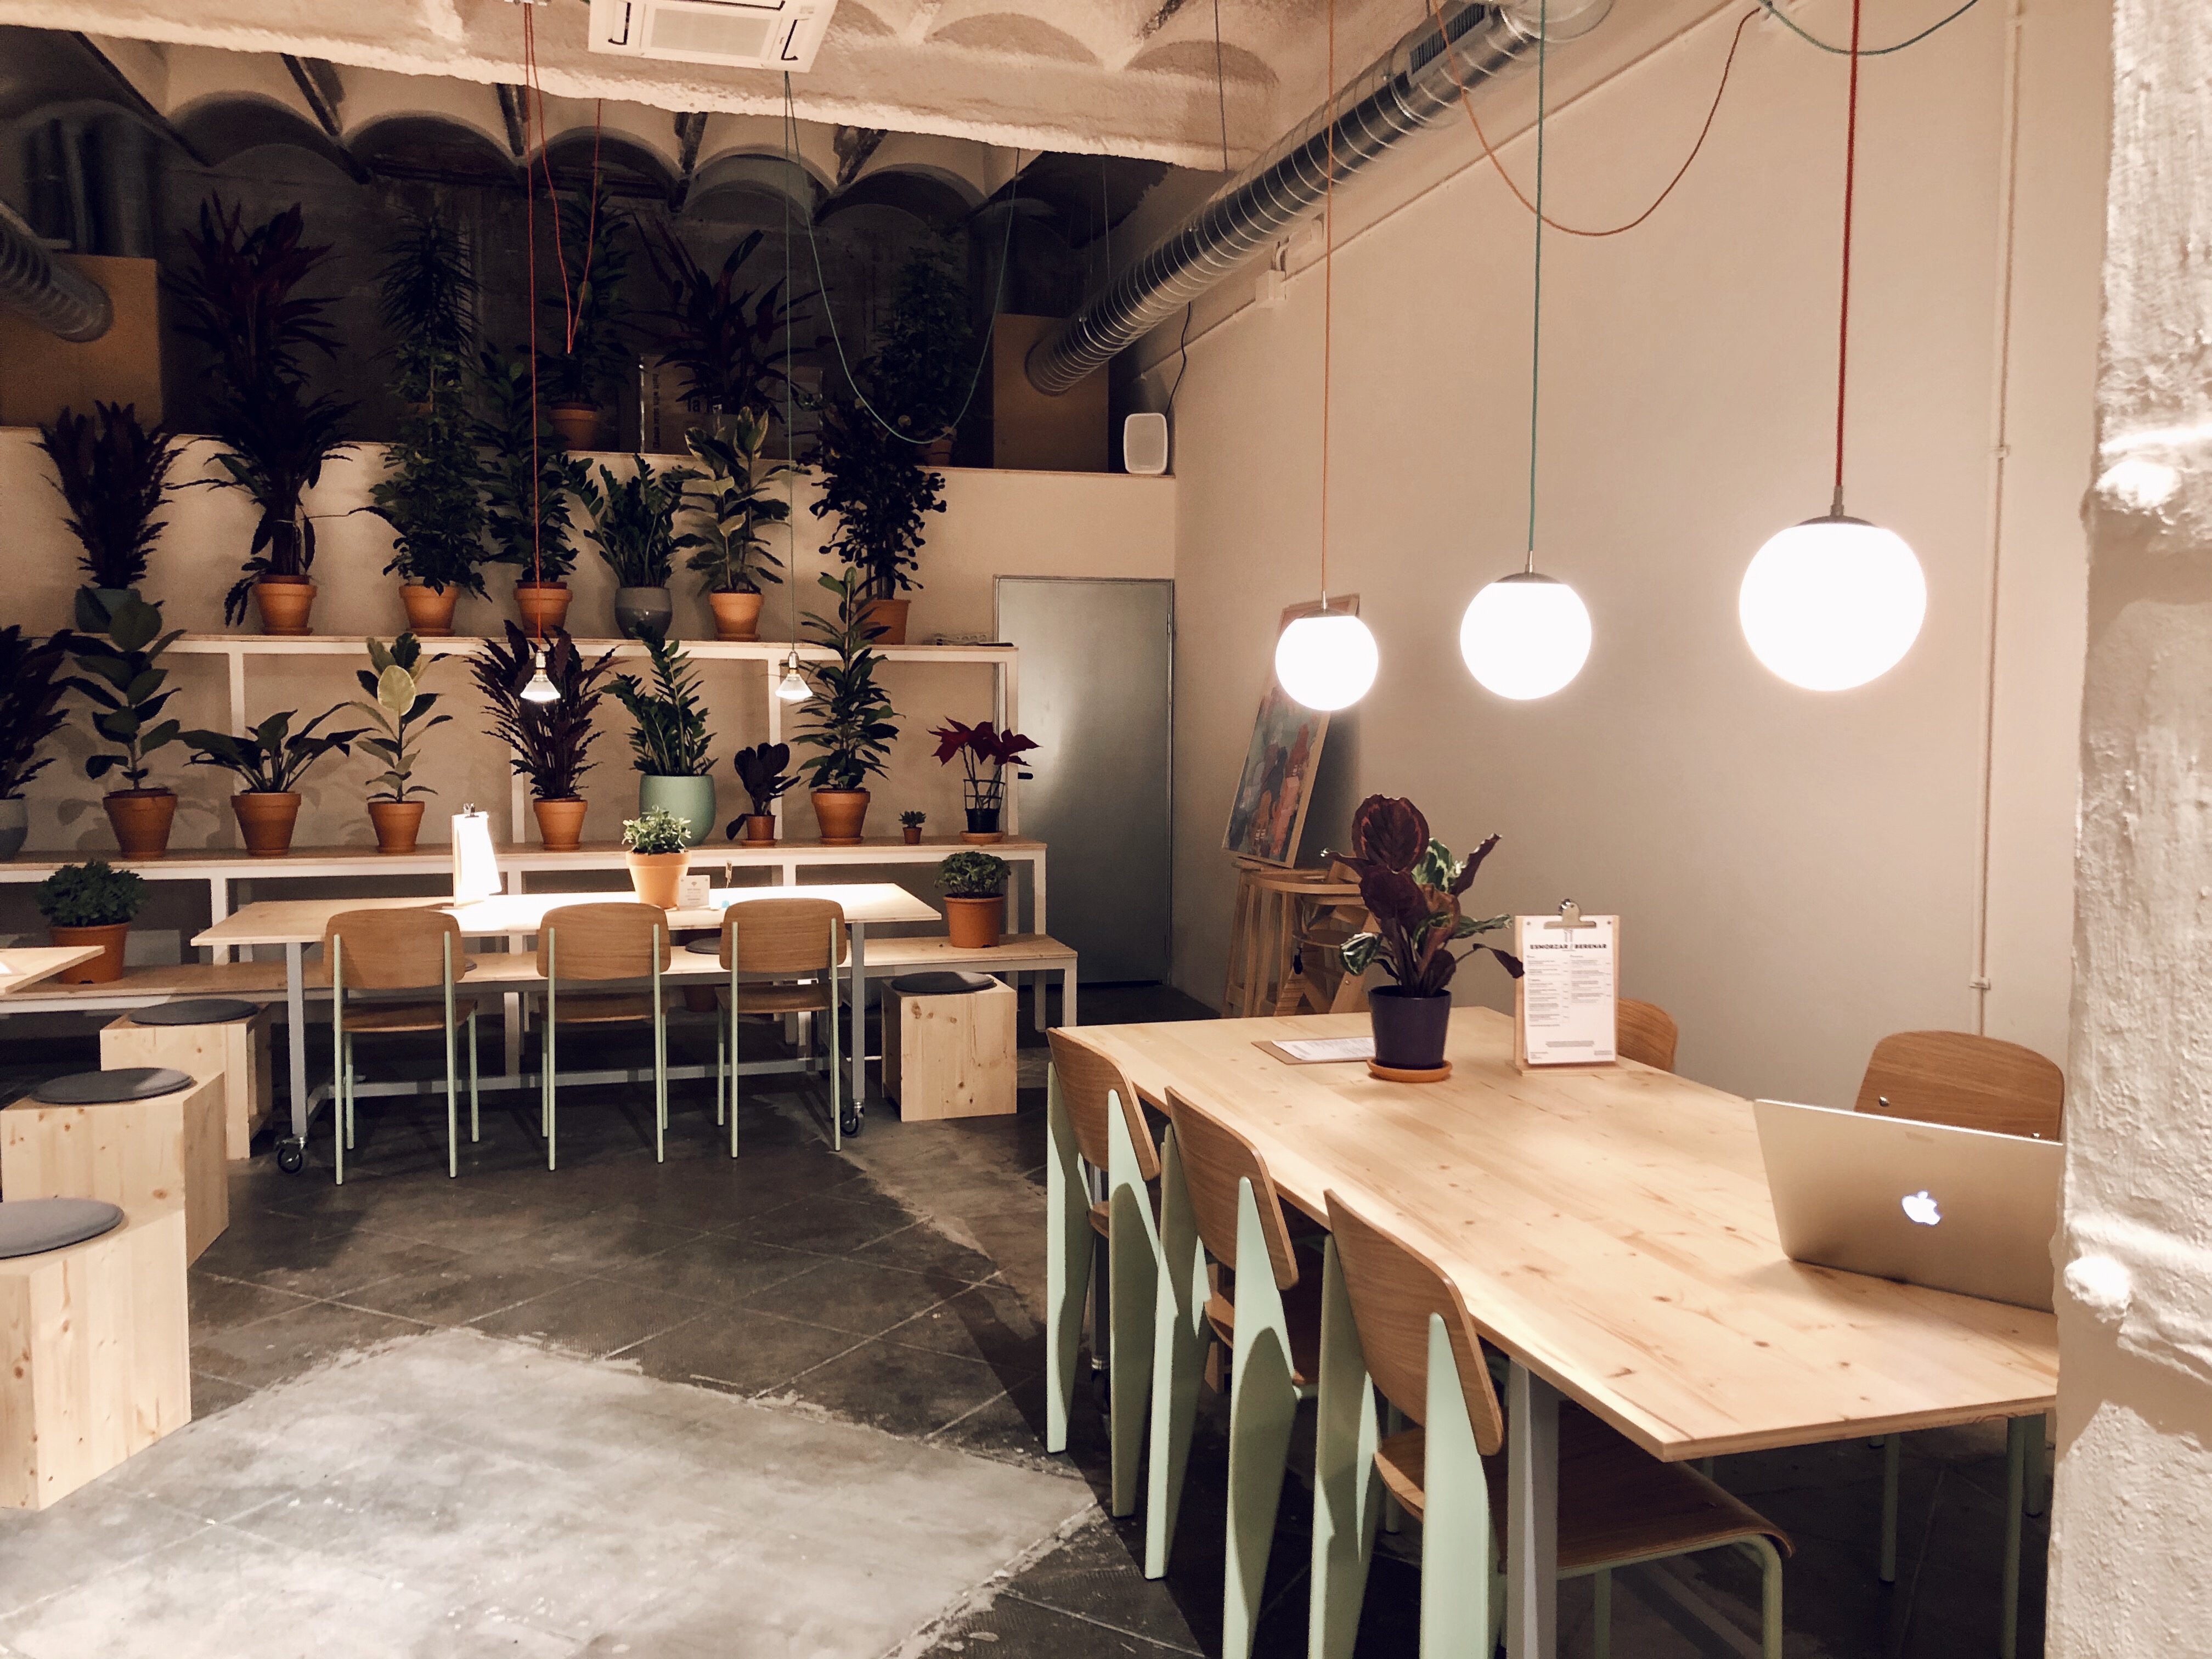 Robot House Barcelona, cuando la creatividad y la comida unen en defensa del bien - Good2b lifestyle Barcelona & Madrid